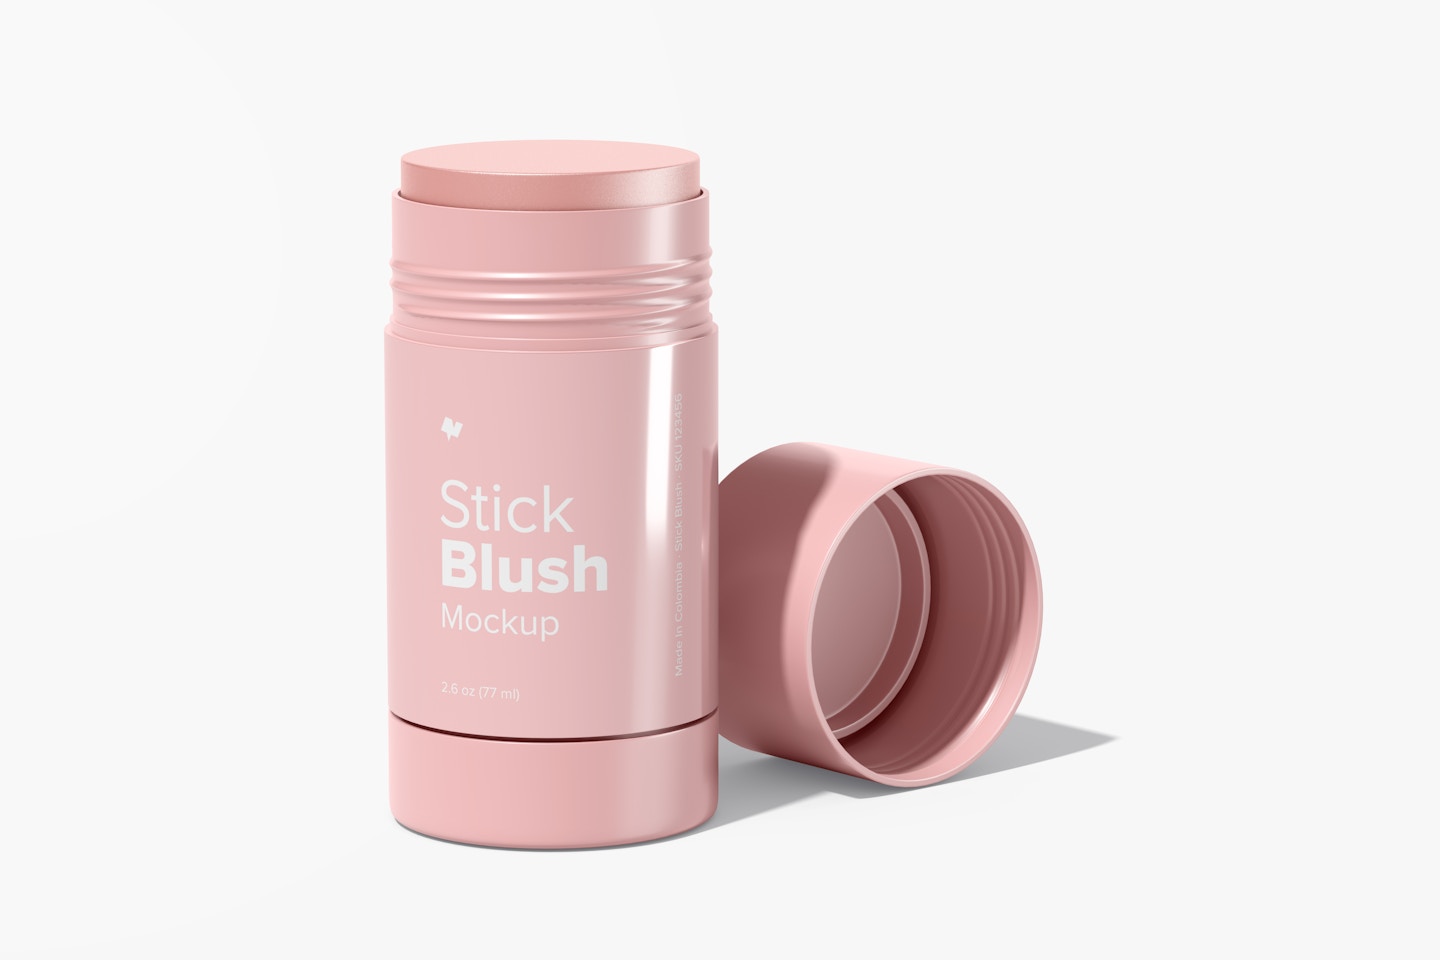 Stick Blush Mockup